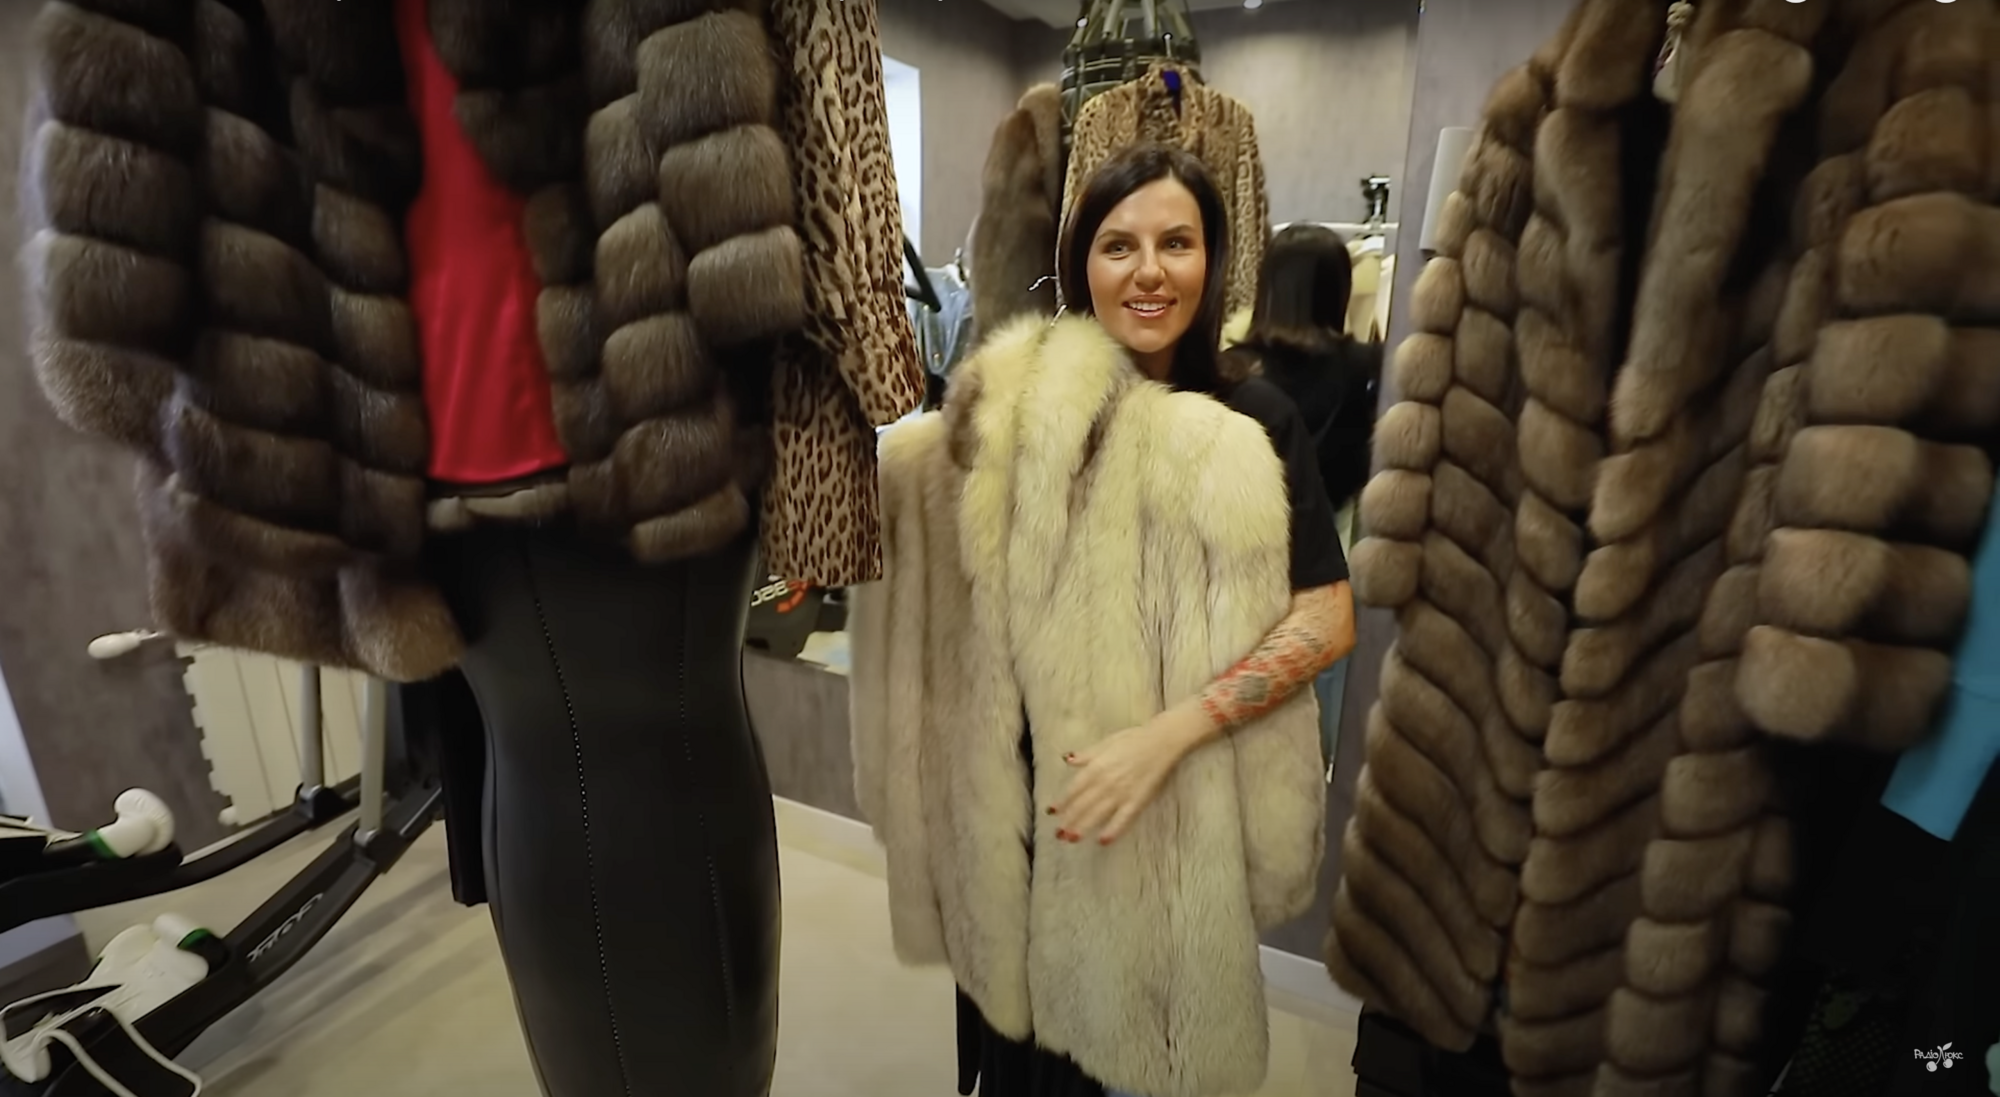 Блогерша Алхим, которая унижала украинцев, показала свою коллекцию шуб и самую дорогую вещь гардероба – пиджак за 5 тысяч евро